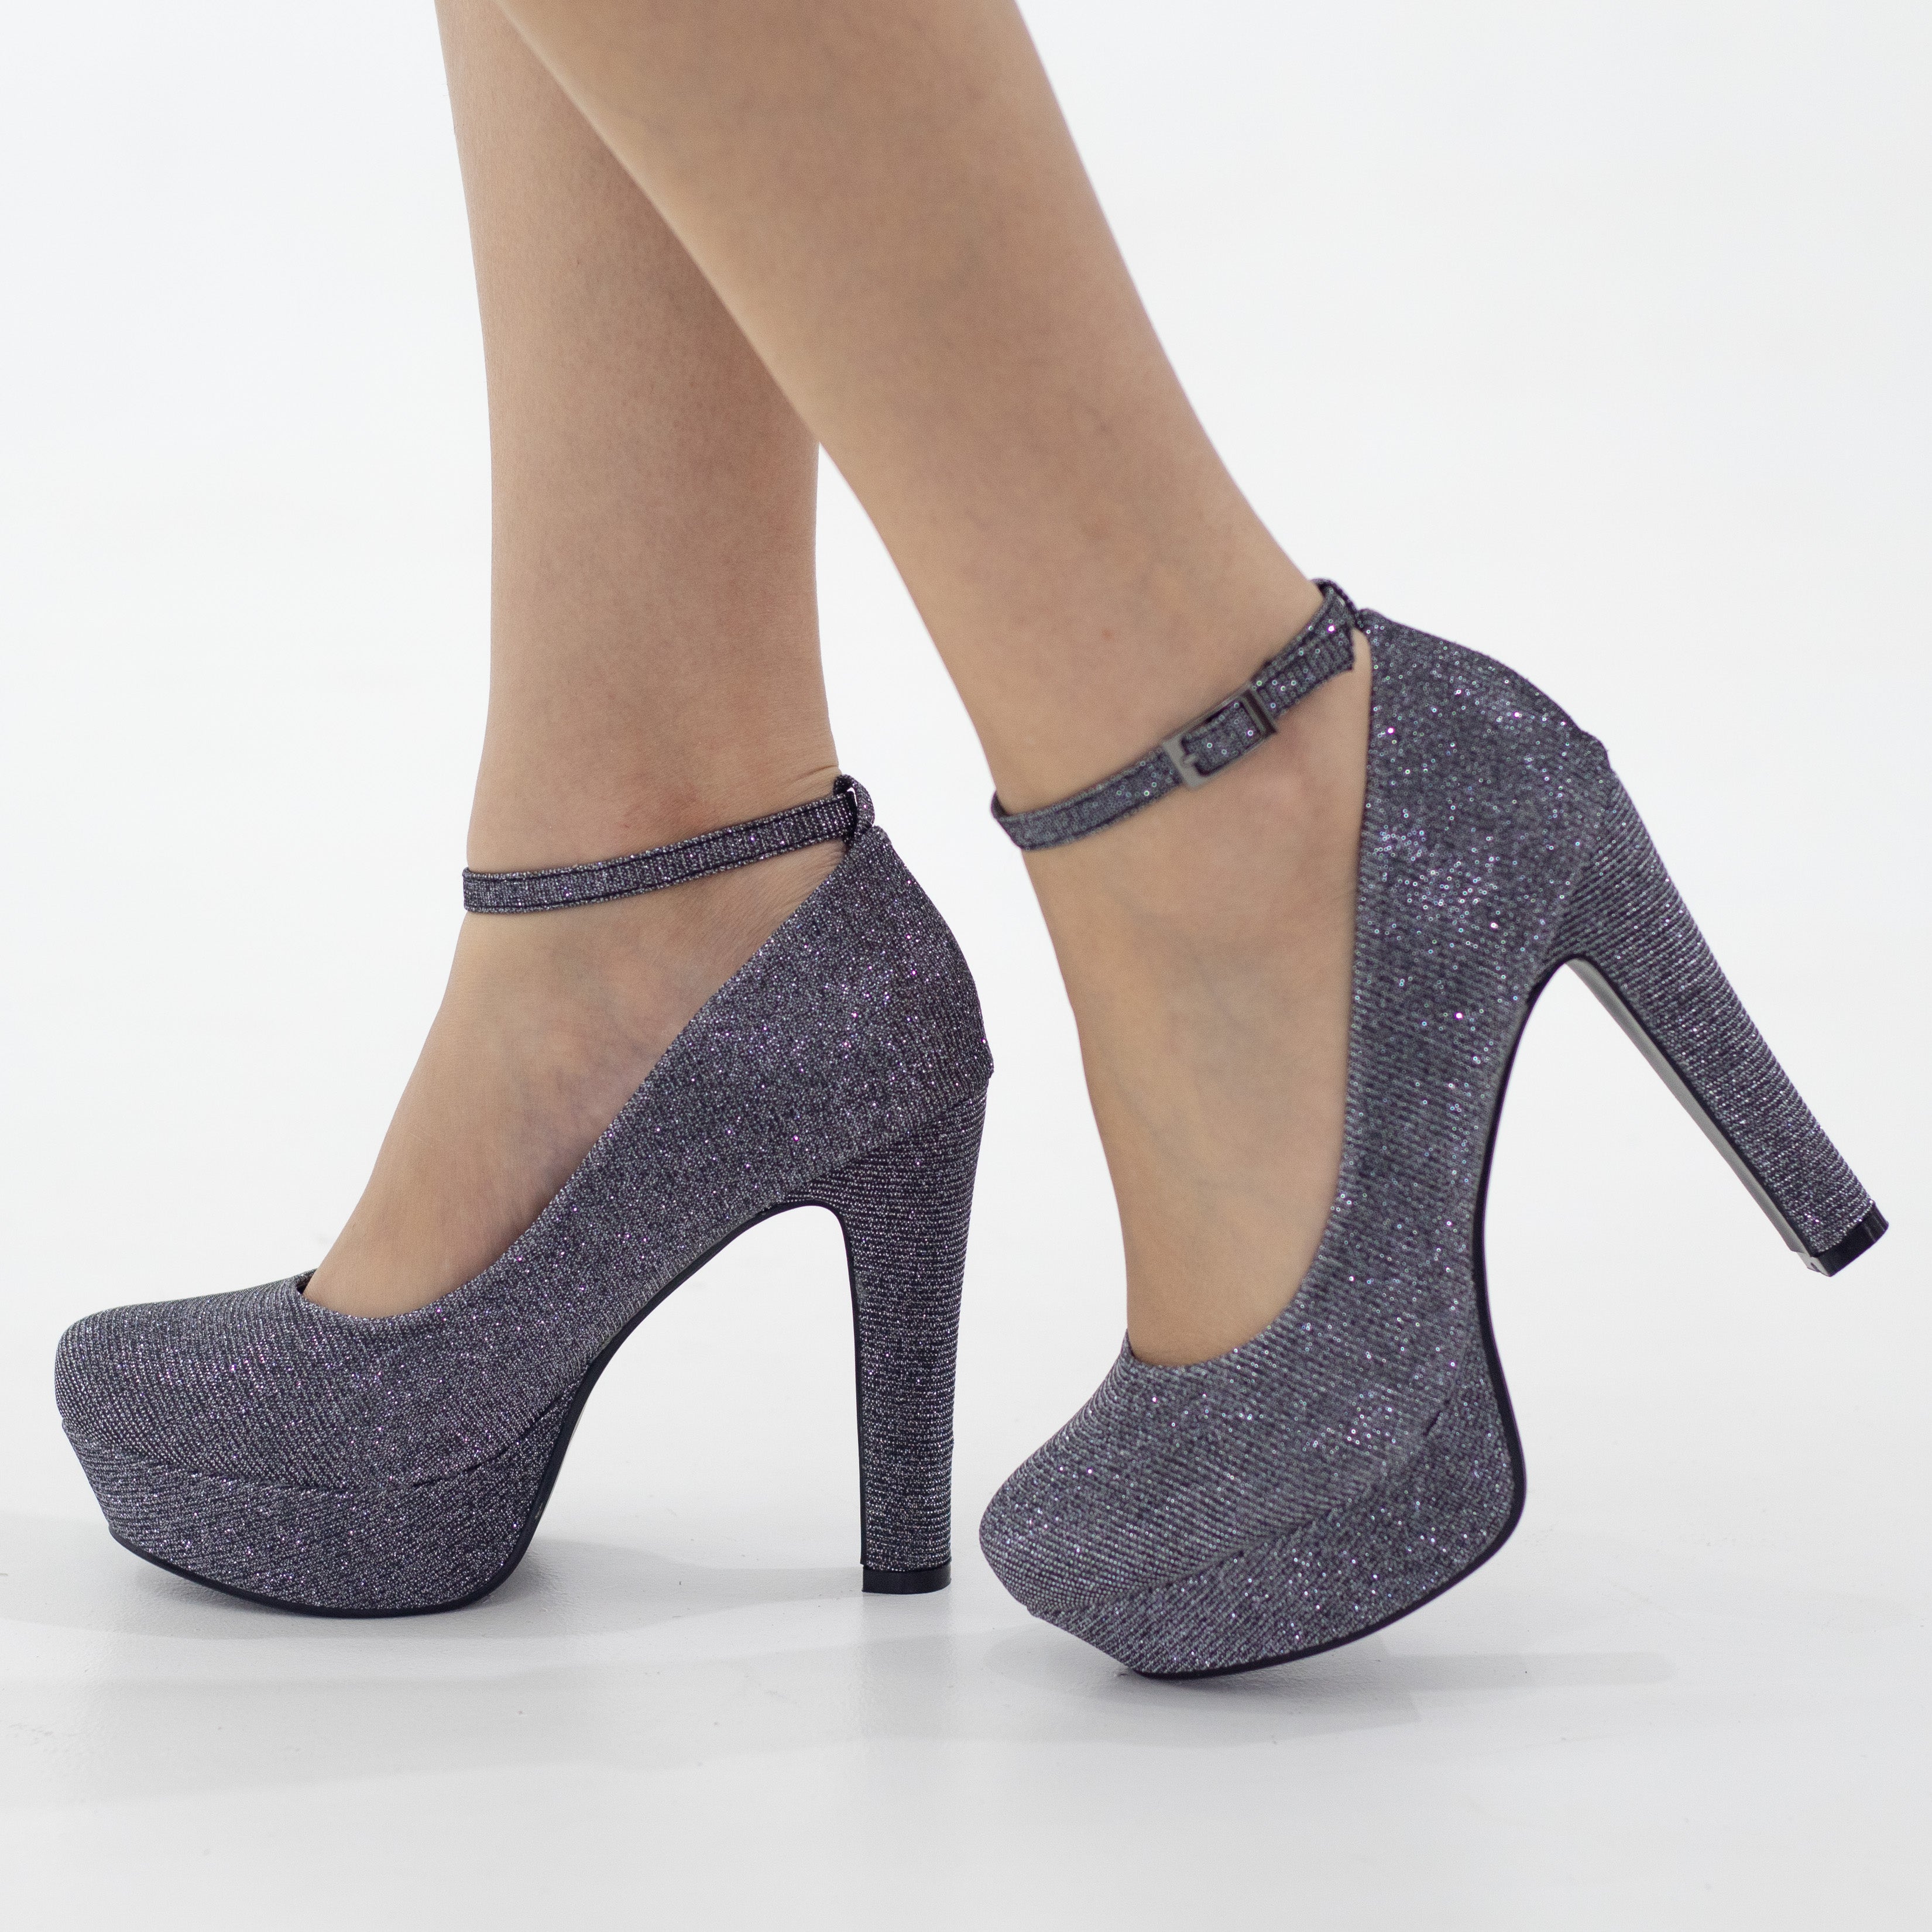 Pewter ankle strap platform courts shimmer 12cm heel irana